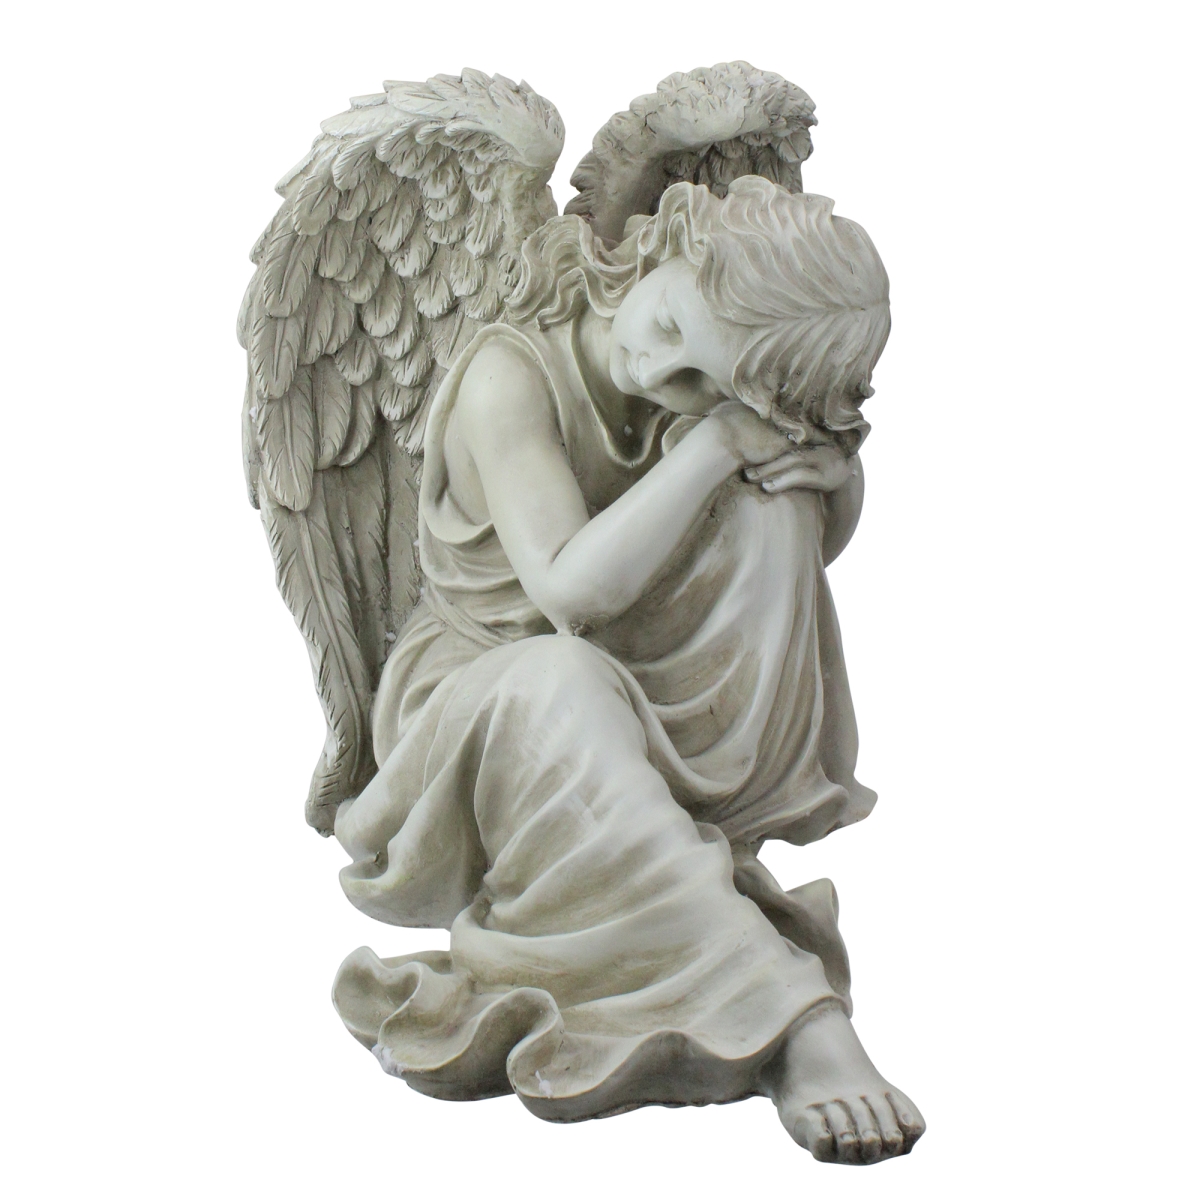 33377769 19 In. Peaceful Resting Angel Outdoor Garden Statue